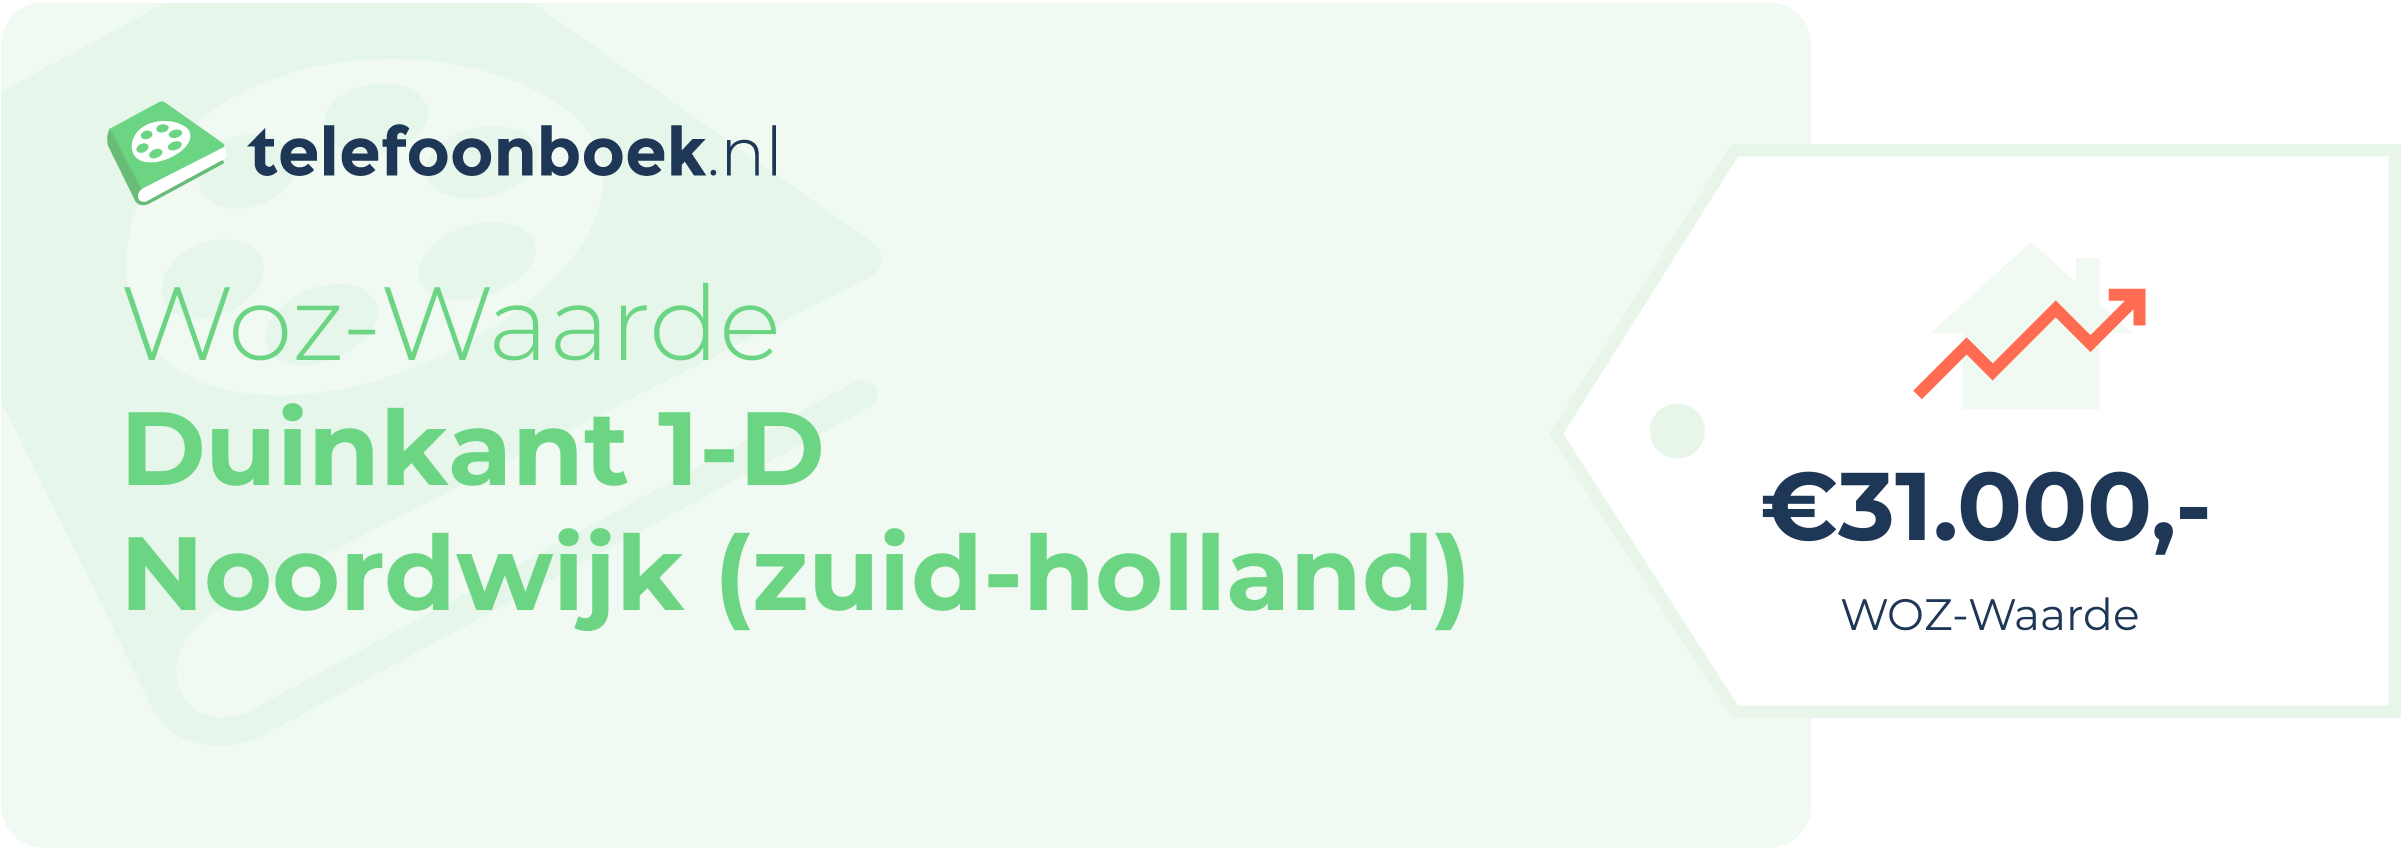 WOZ-waarde Duinkant 1-D Noordwijk (Zuid-Holland)